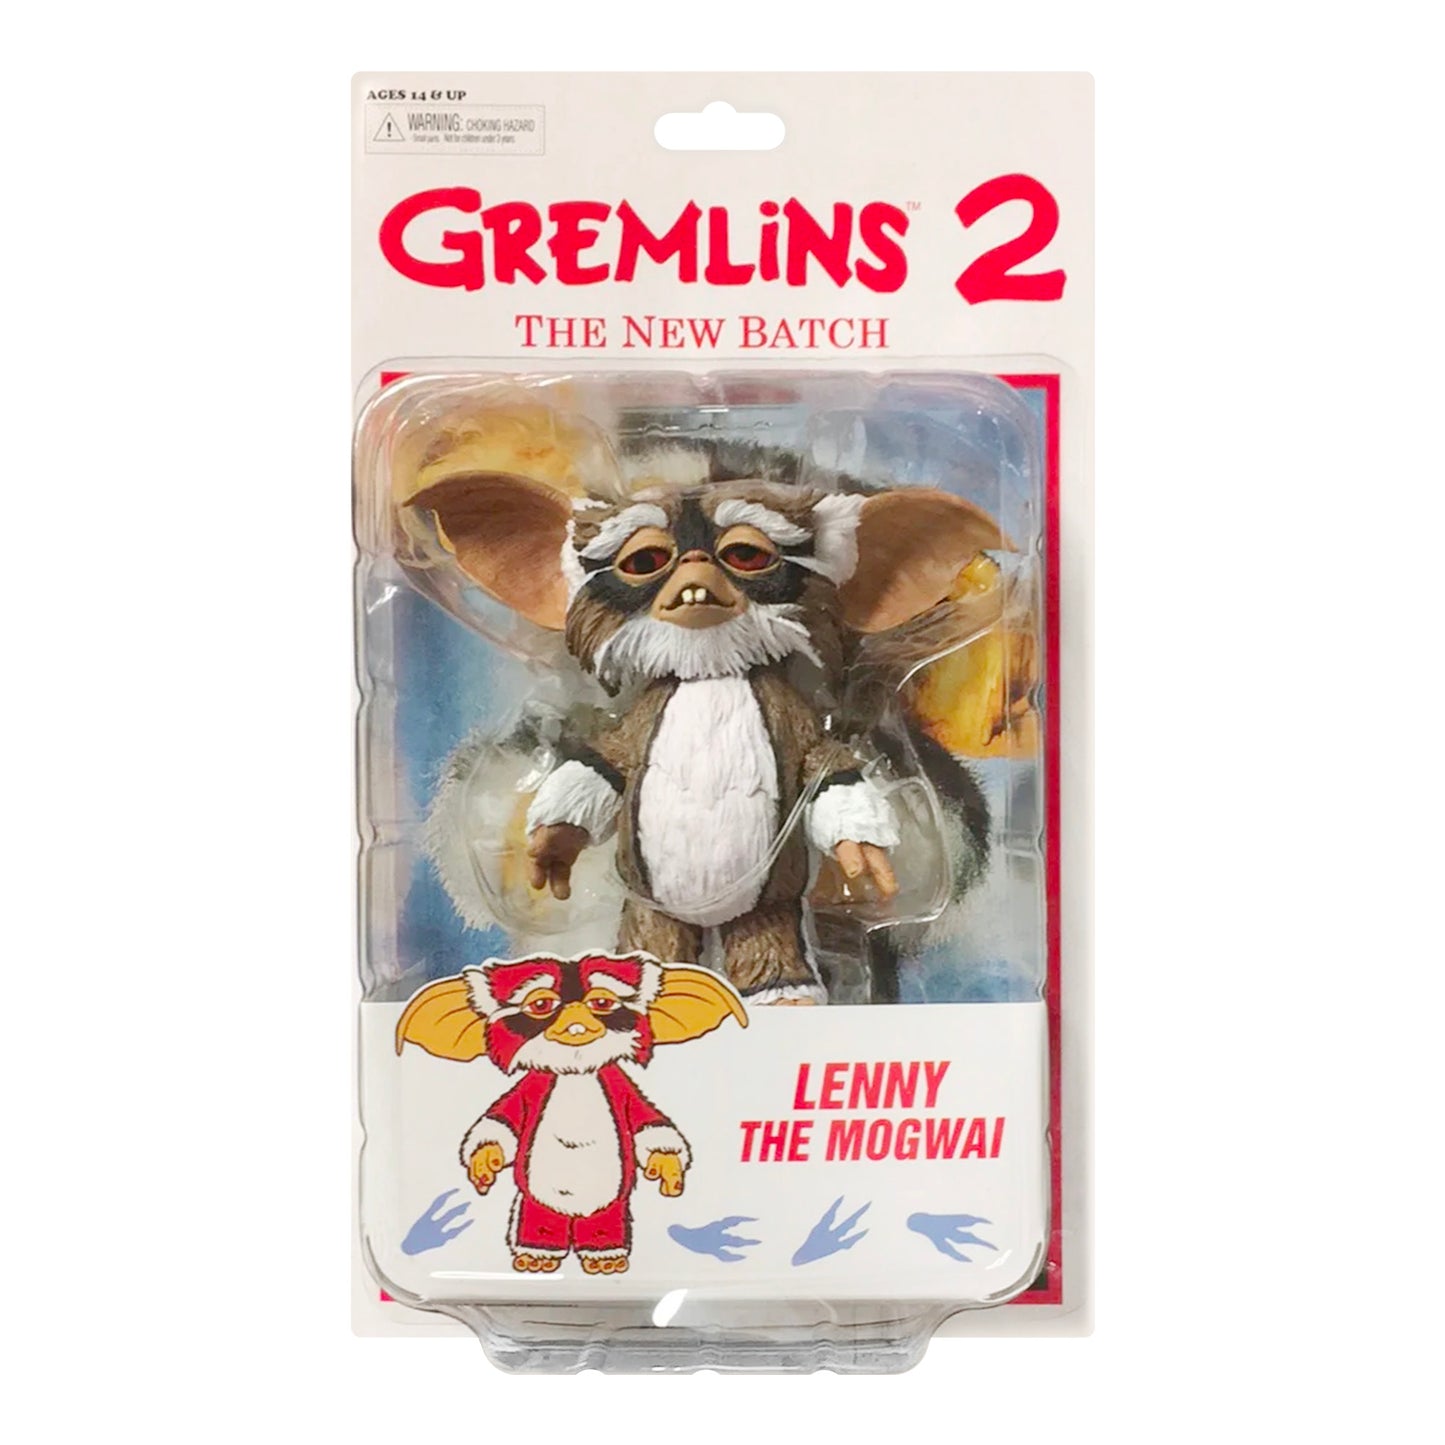 GREMLINS 2 Pack 2 Figurines Demolition Ultimate Neca